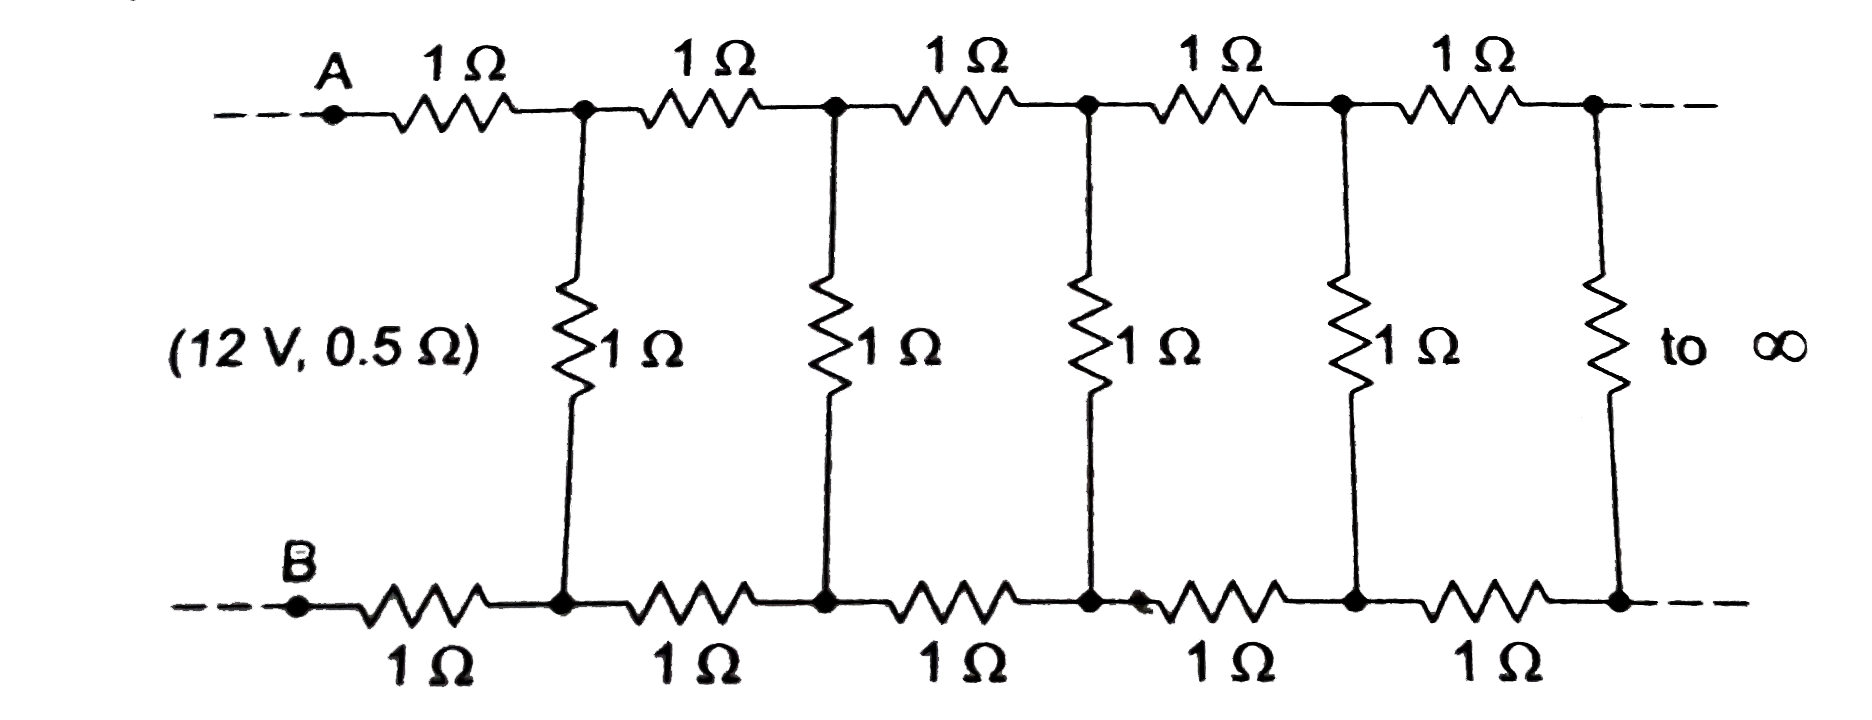 चित्र 2.1-10 में 1 Omega के अनेक प्रतिरोधक को मिलाकर A एवं B के बीच एक अनंत नेटवर्क (infinite netwark) बनाया गया है।   (a) A एवं B के बीच प्रतिरोध ज्ञात करें।   यदि AB के बीच 12 V की एक बैटरी जिसका आंतरिक प्रतिरोध 0.5Omega है, जोड़ दिया जाए तो नेटवर्क द्वारा ली गयी धारा का मान ज्ञात करें।